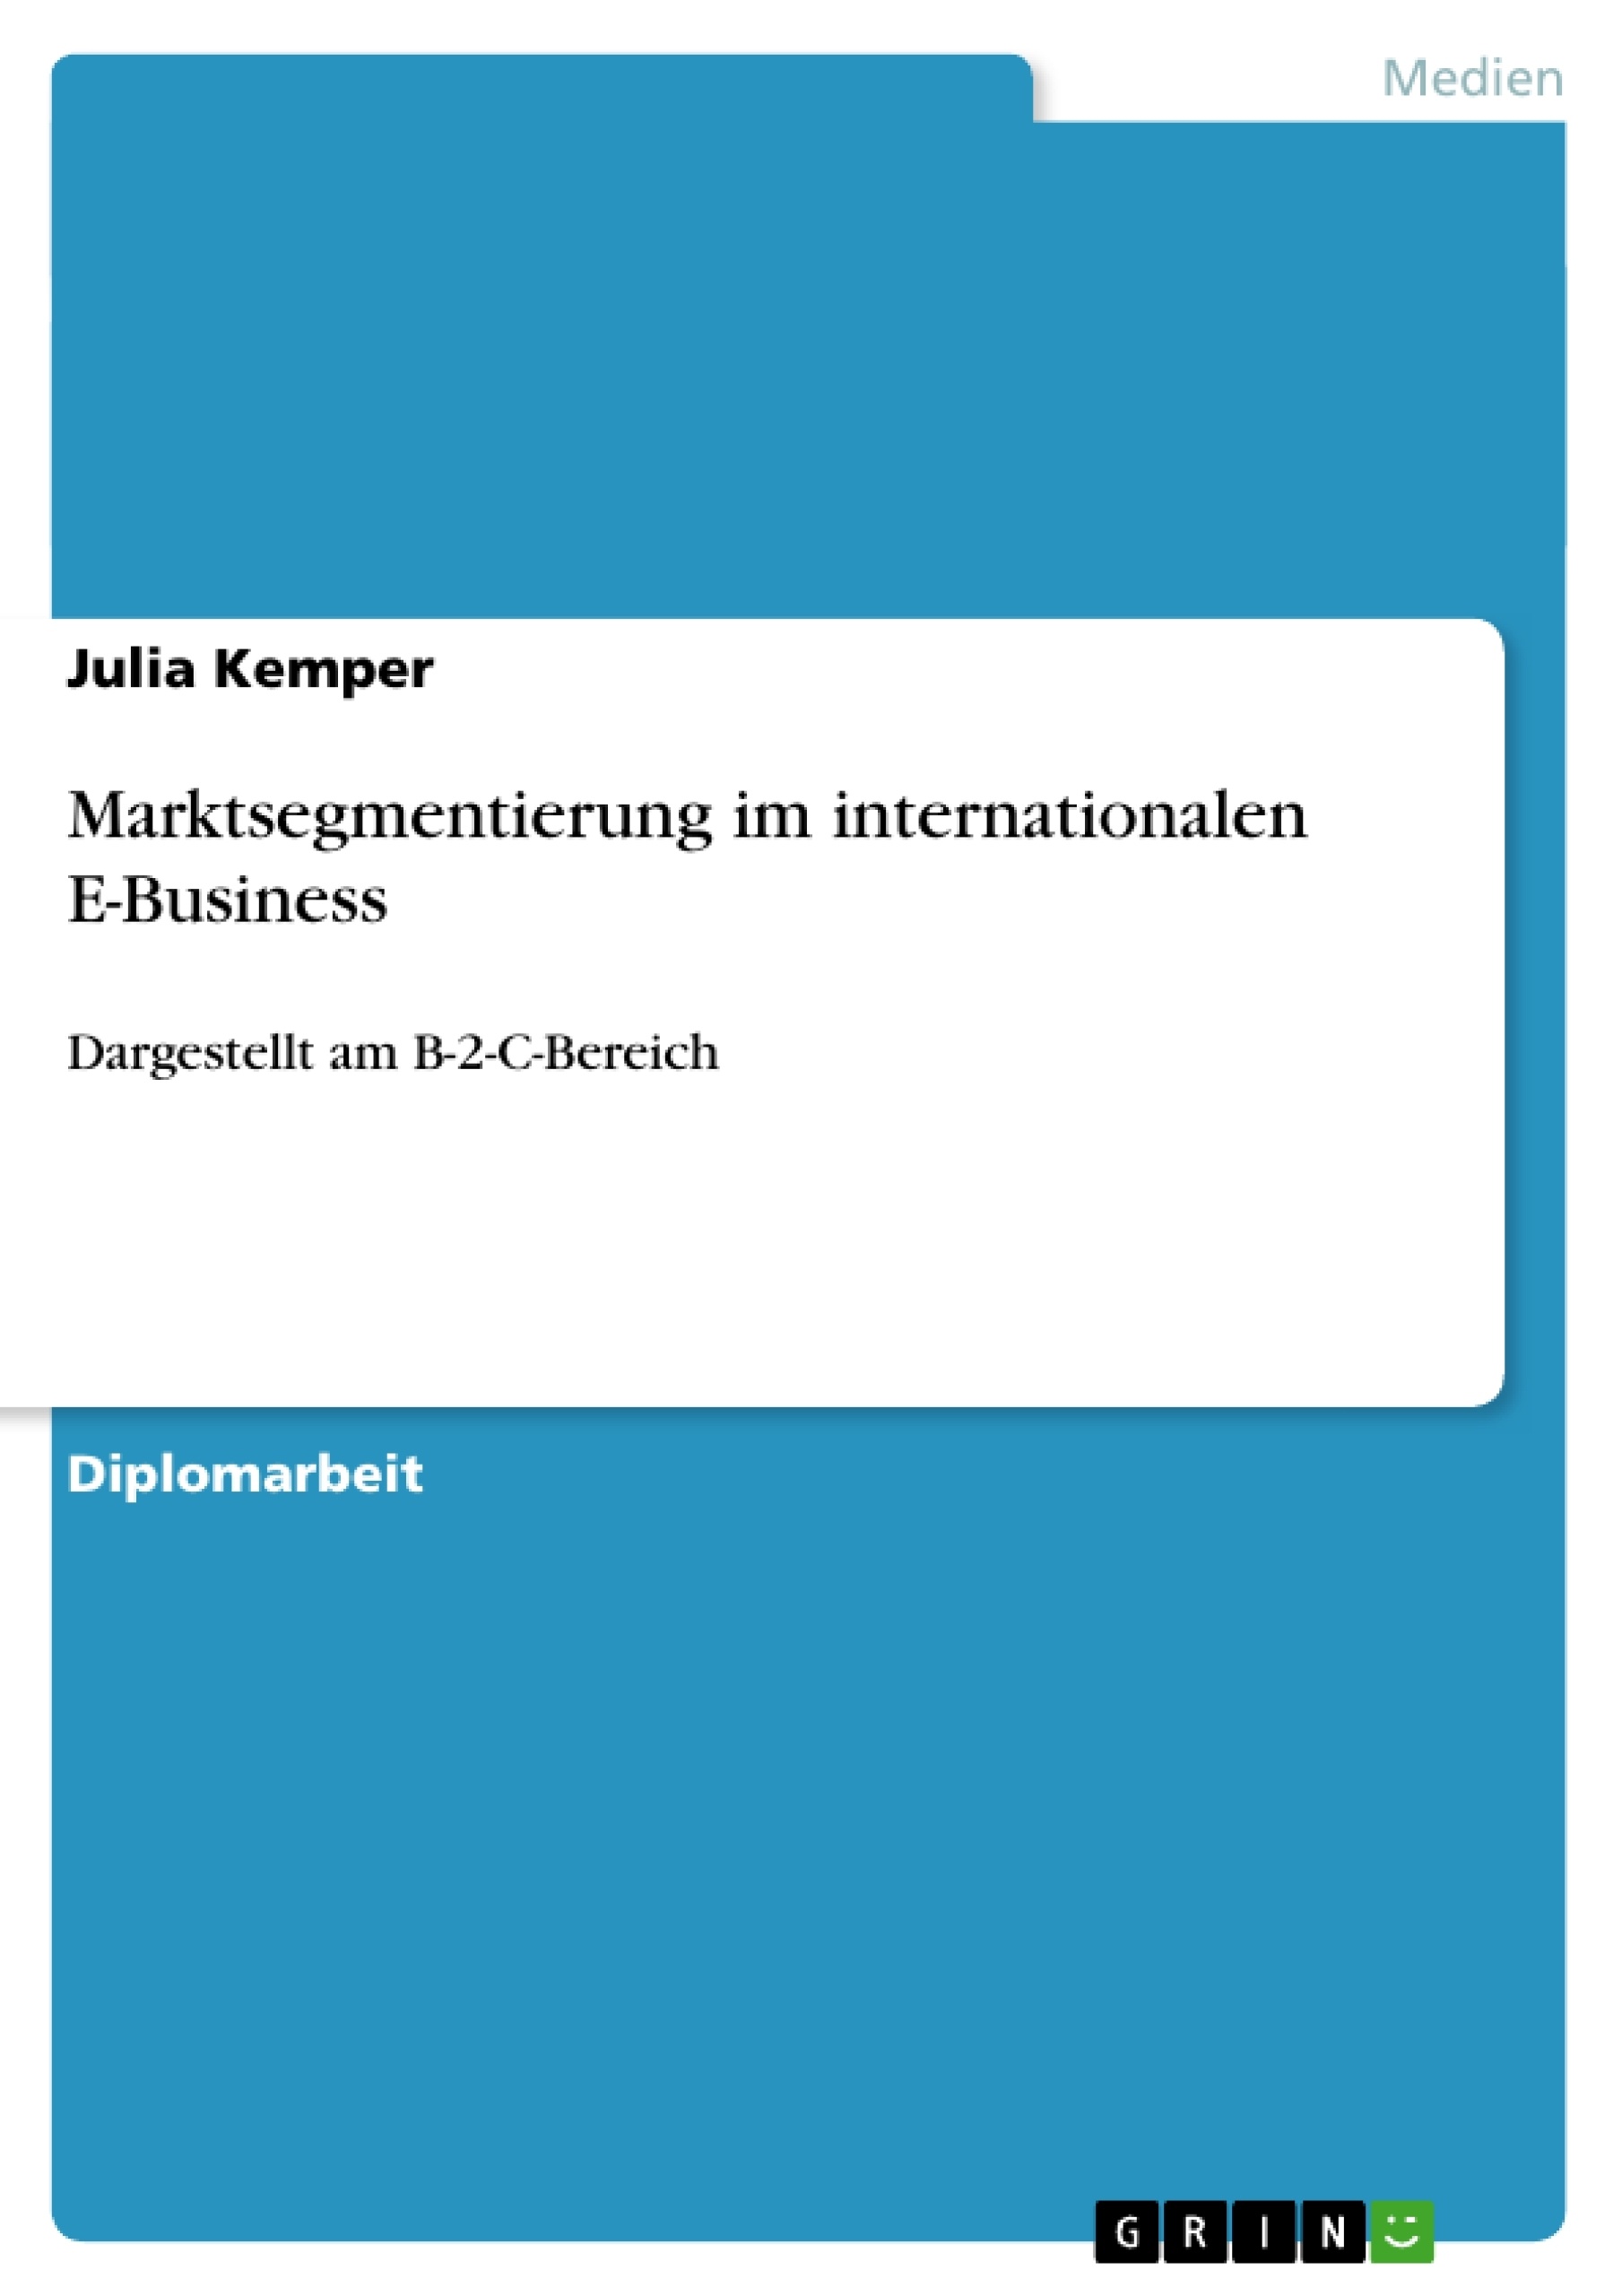 Title: Marktsegmentierung im internationalen E-Business